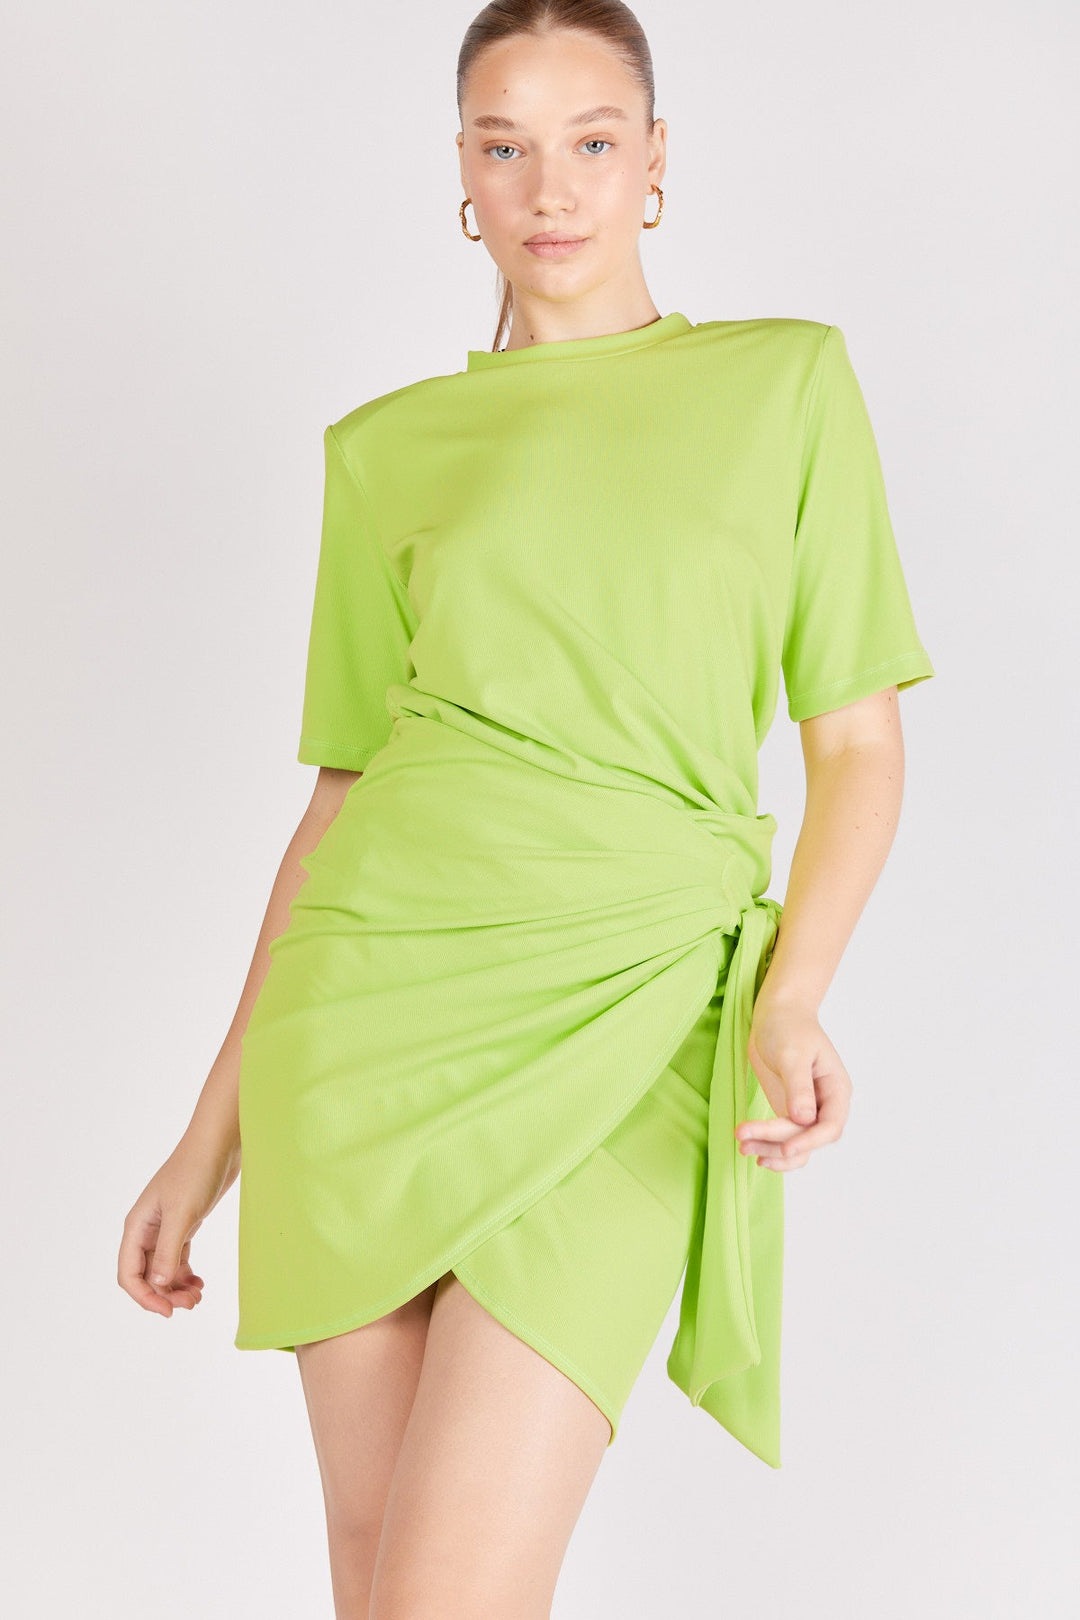 חצאית מיני אלבינה בצבע ירוק - Dana Sidi